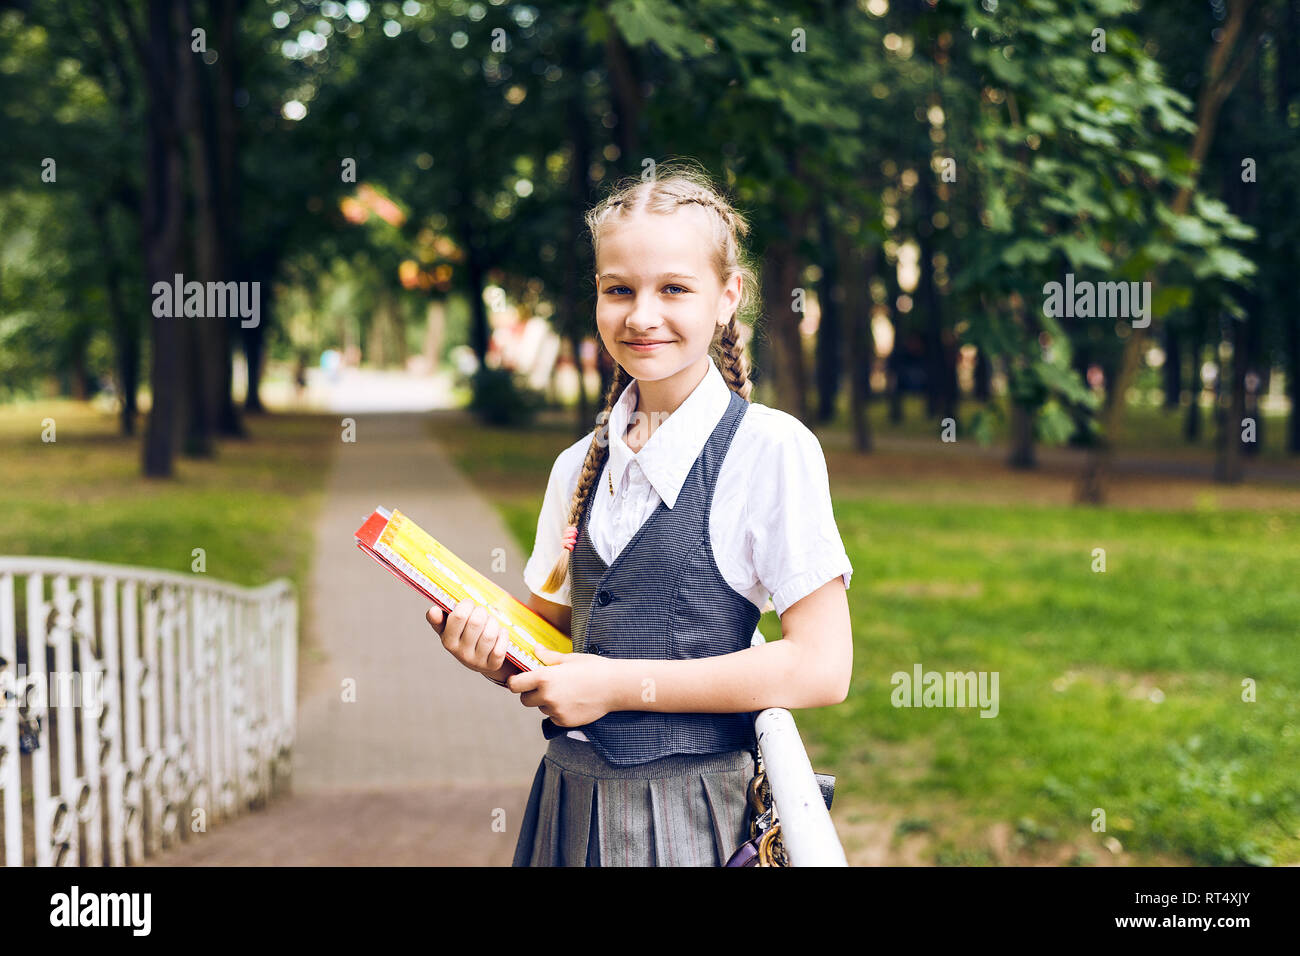 Retrato de una estudiante adolescente en uniforme con una mochila, en un parque cerca de un gran árbol. colegiala leyendo un libro Foto de stock